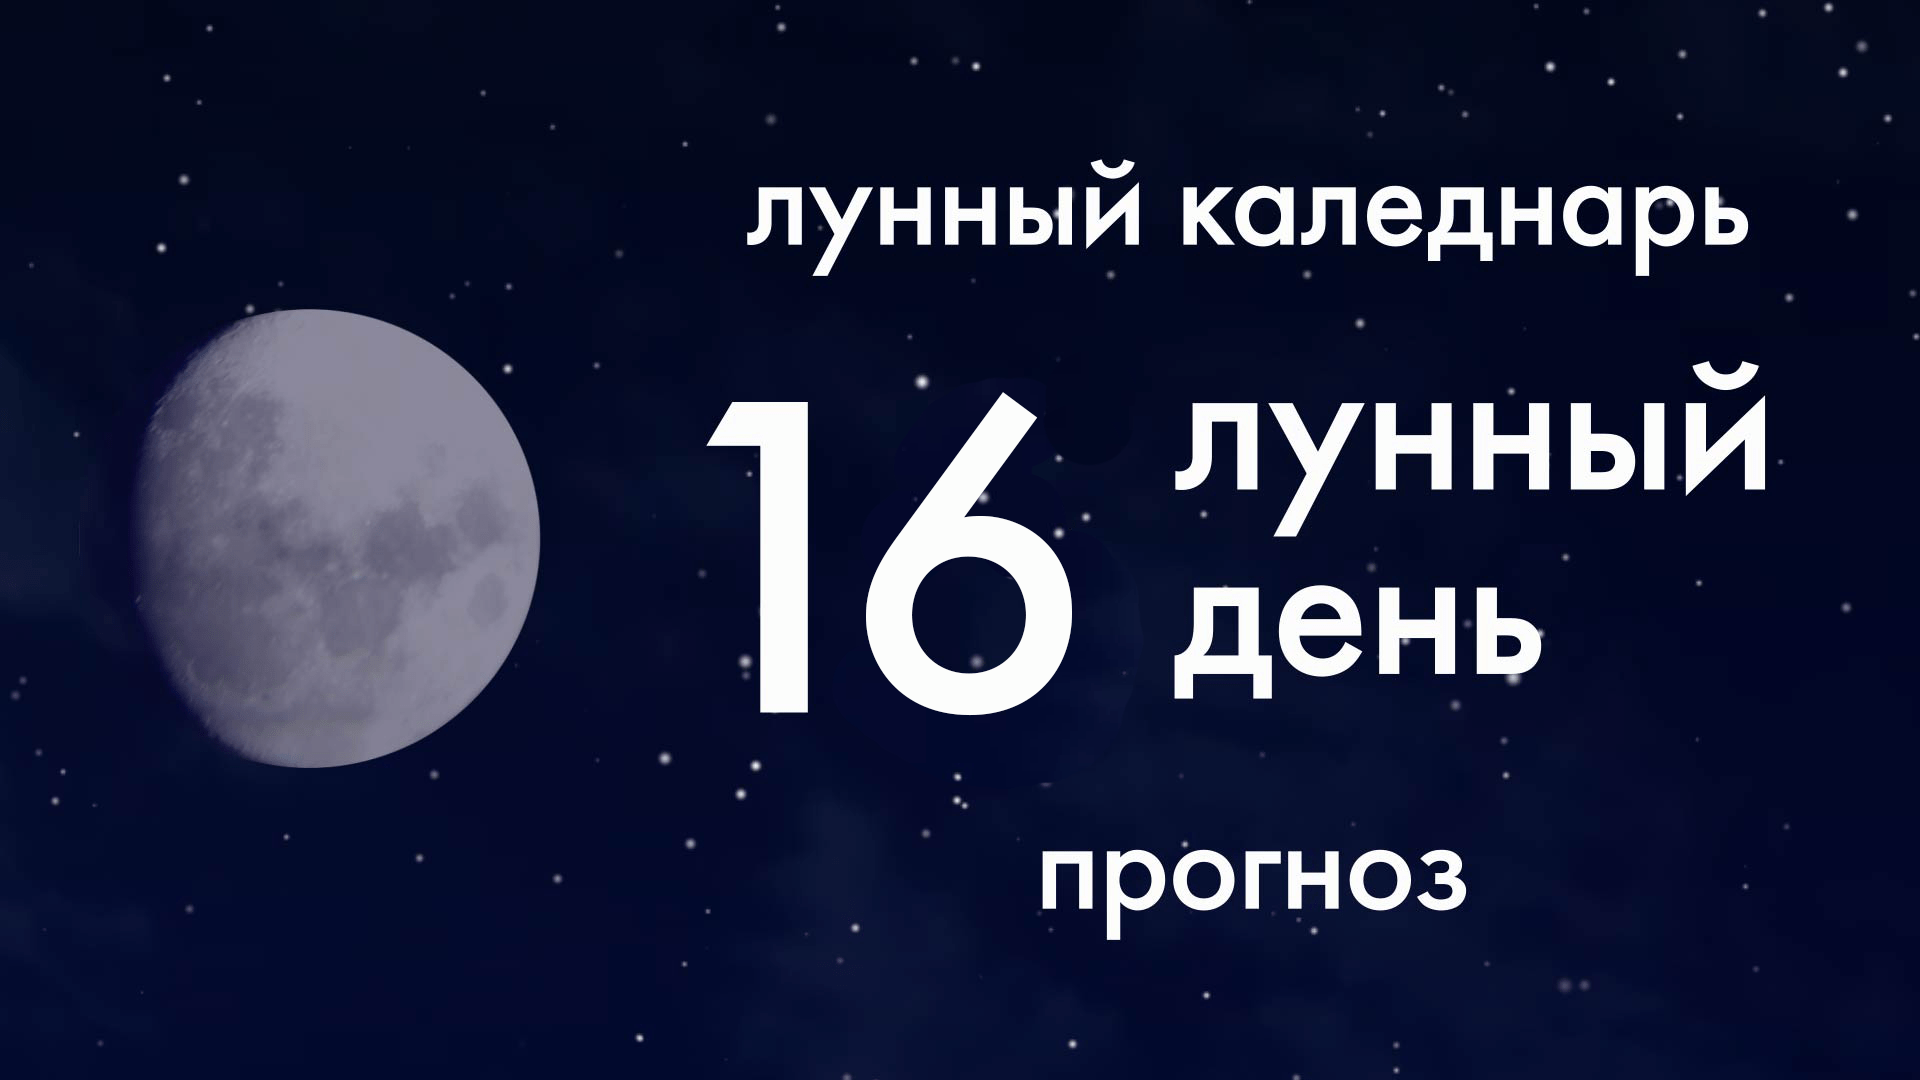 14 лунный день